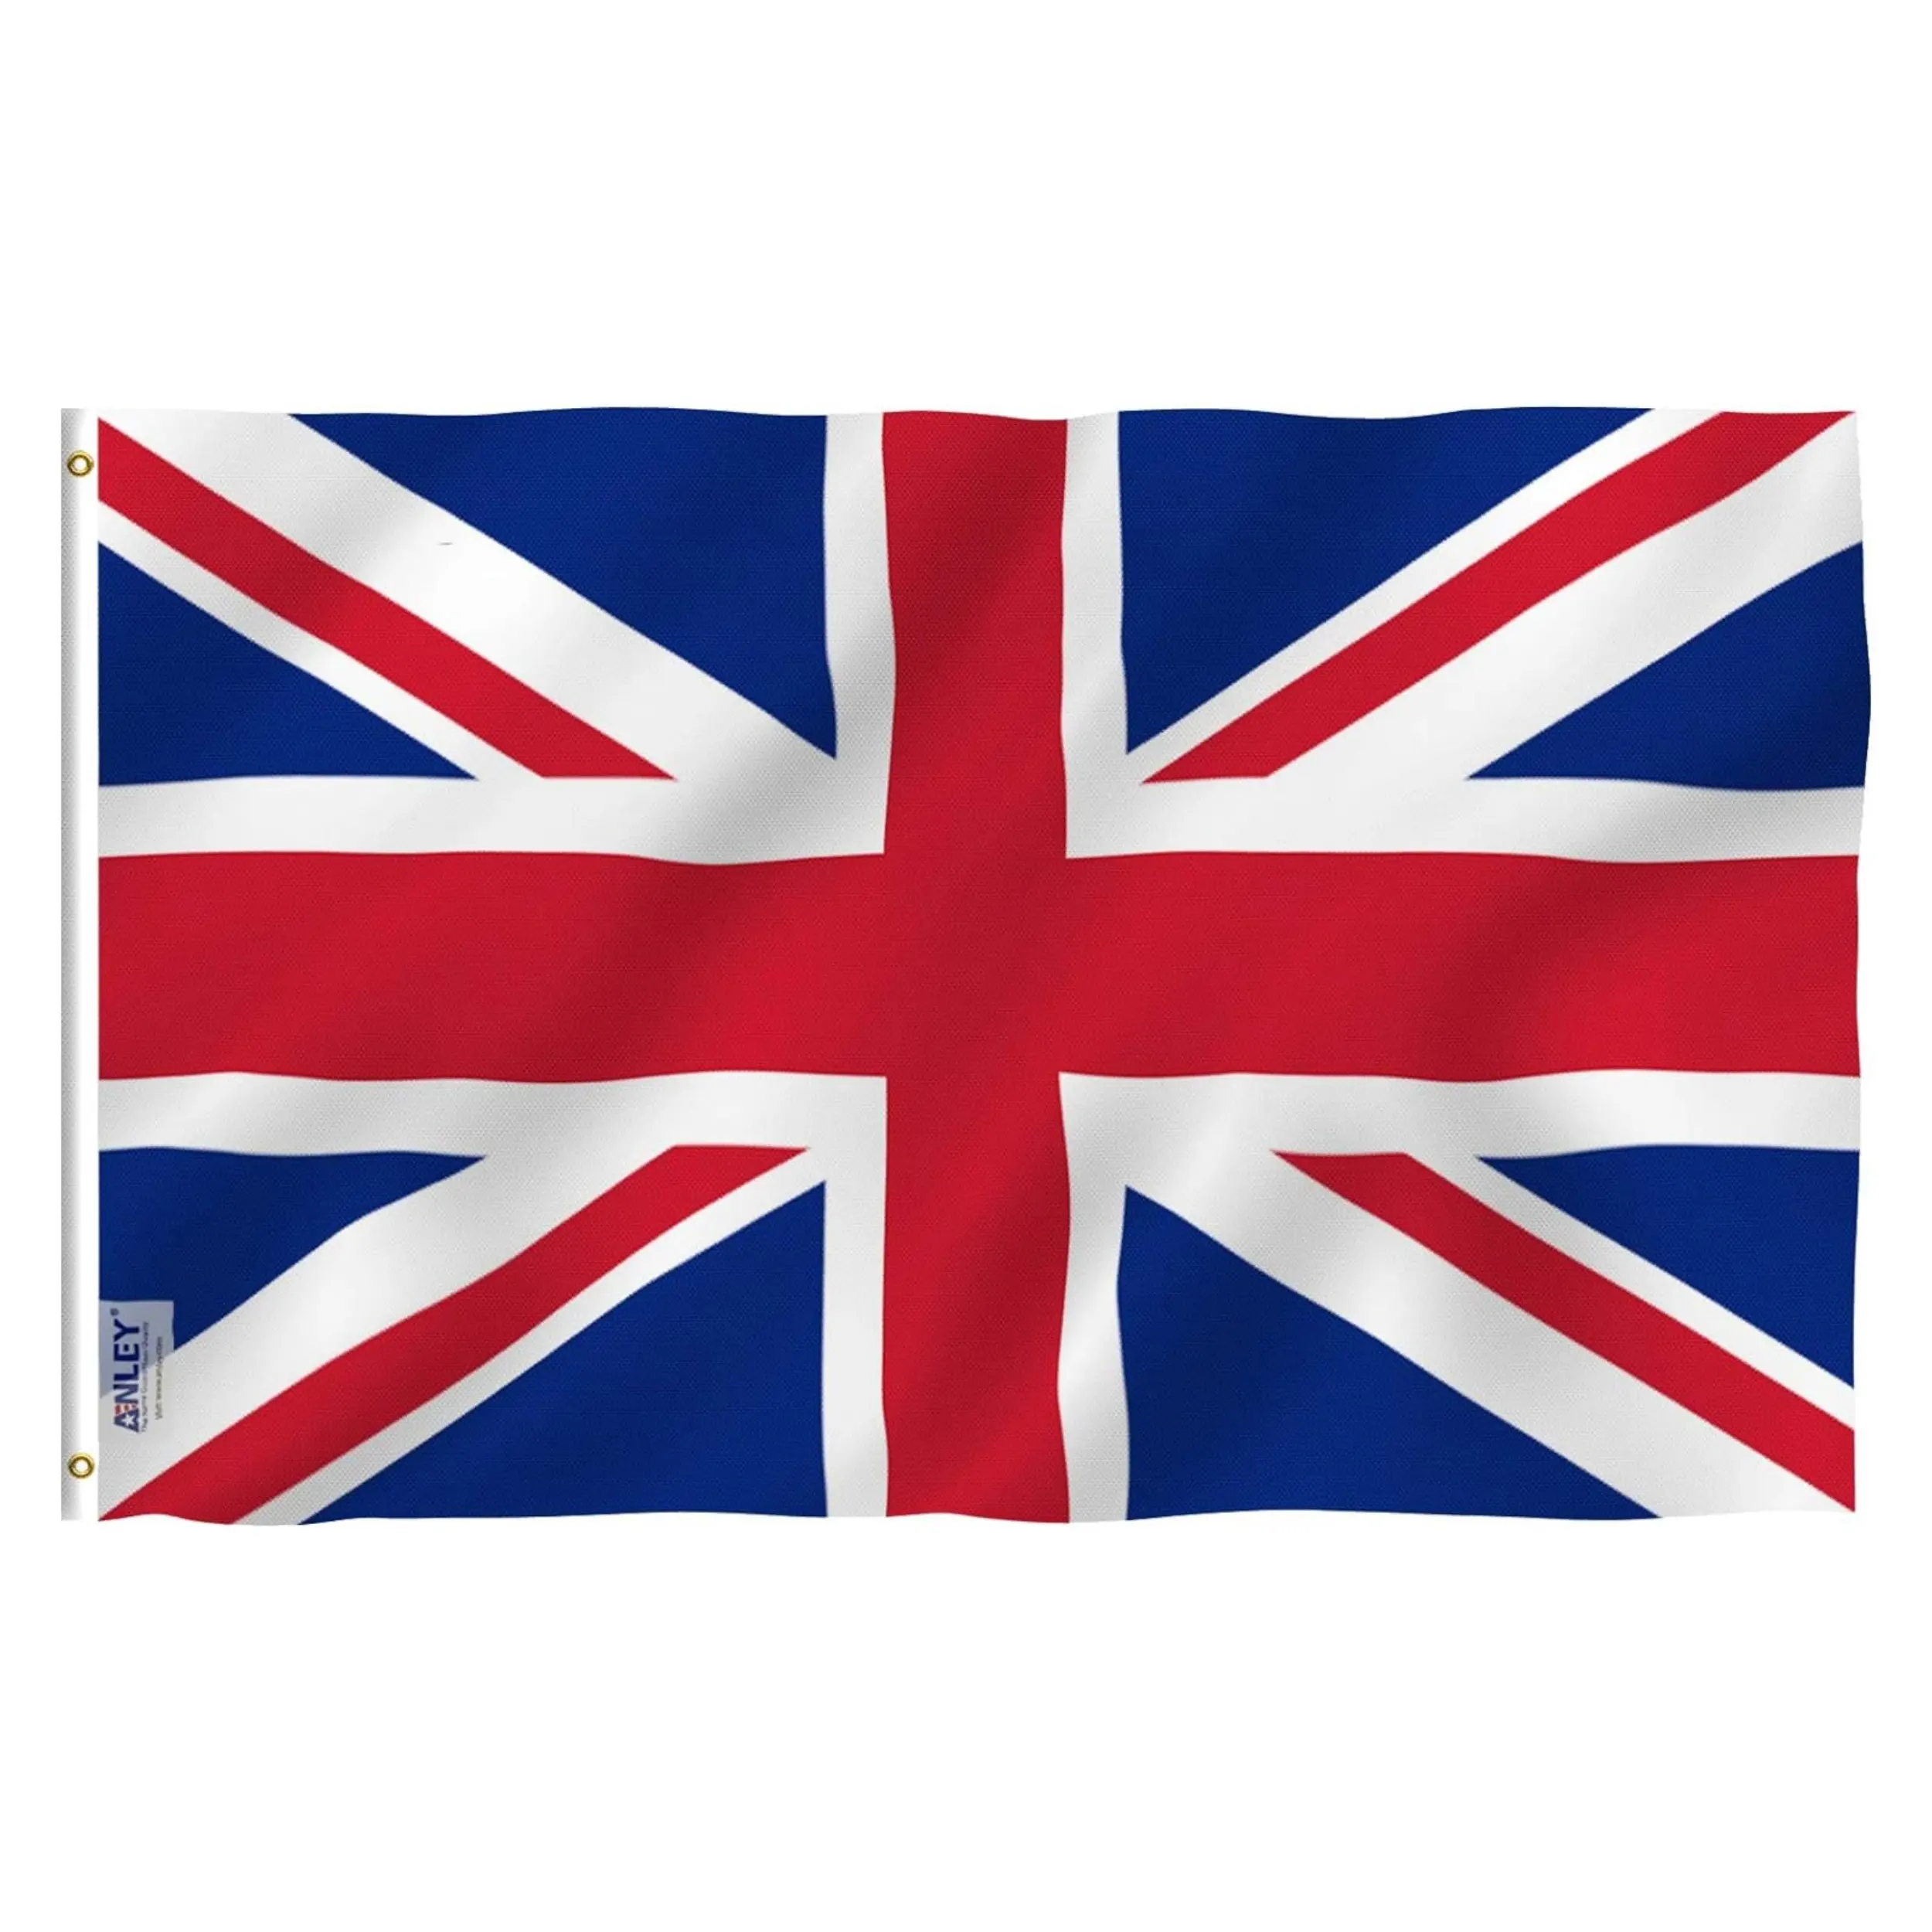 Venta al por mayor 3x5 pies poliéster Reino Unido Gran Bretaña bandera nacional todos los países Inglaterra Reino Unido bandera británica 3x5FT bandera Union Jack